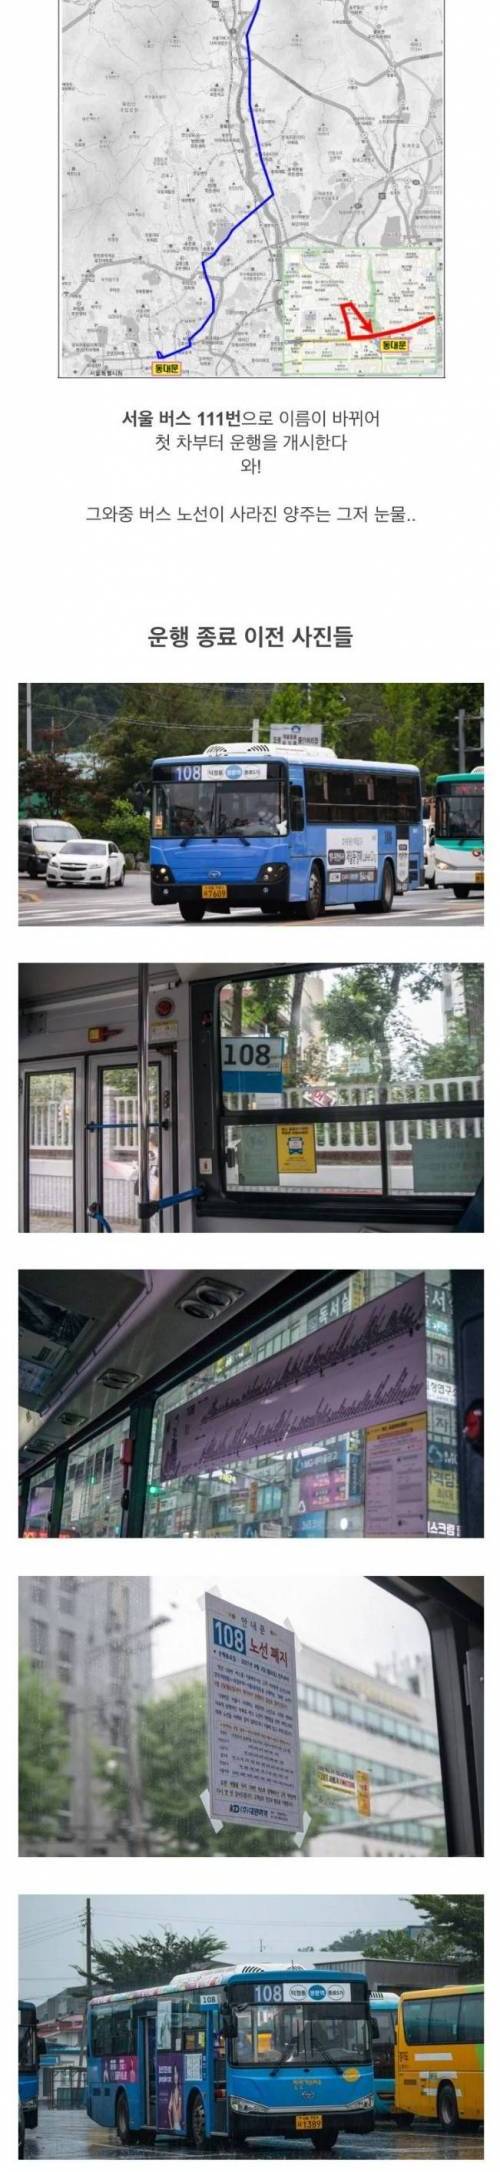 [스압] 사라진 서울에서 가장 긴 버스 노선.jpg